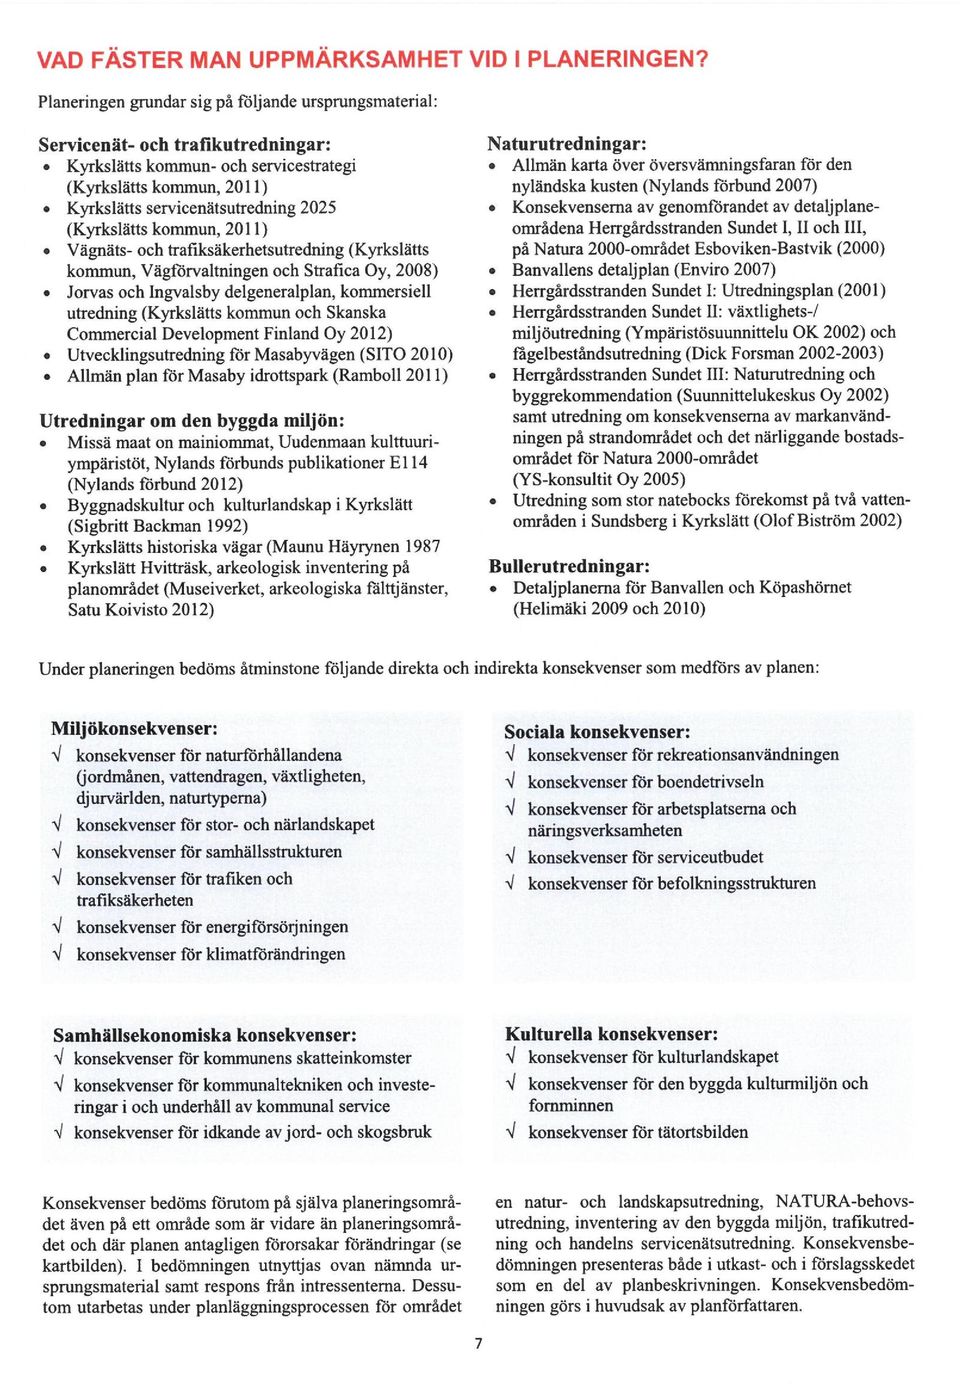 (Kyrkslätts kommua, 2011) Vägnäts- och b-afiksäkerhetsutredning (Kyrkslätts kommun, Vägforvaltningen och Strafica Oy, 2008) Jorvas och Ingvalsby delgeneralplan, kommersiell utredning (Kyrkslätts